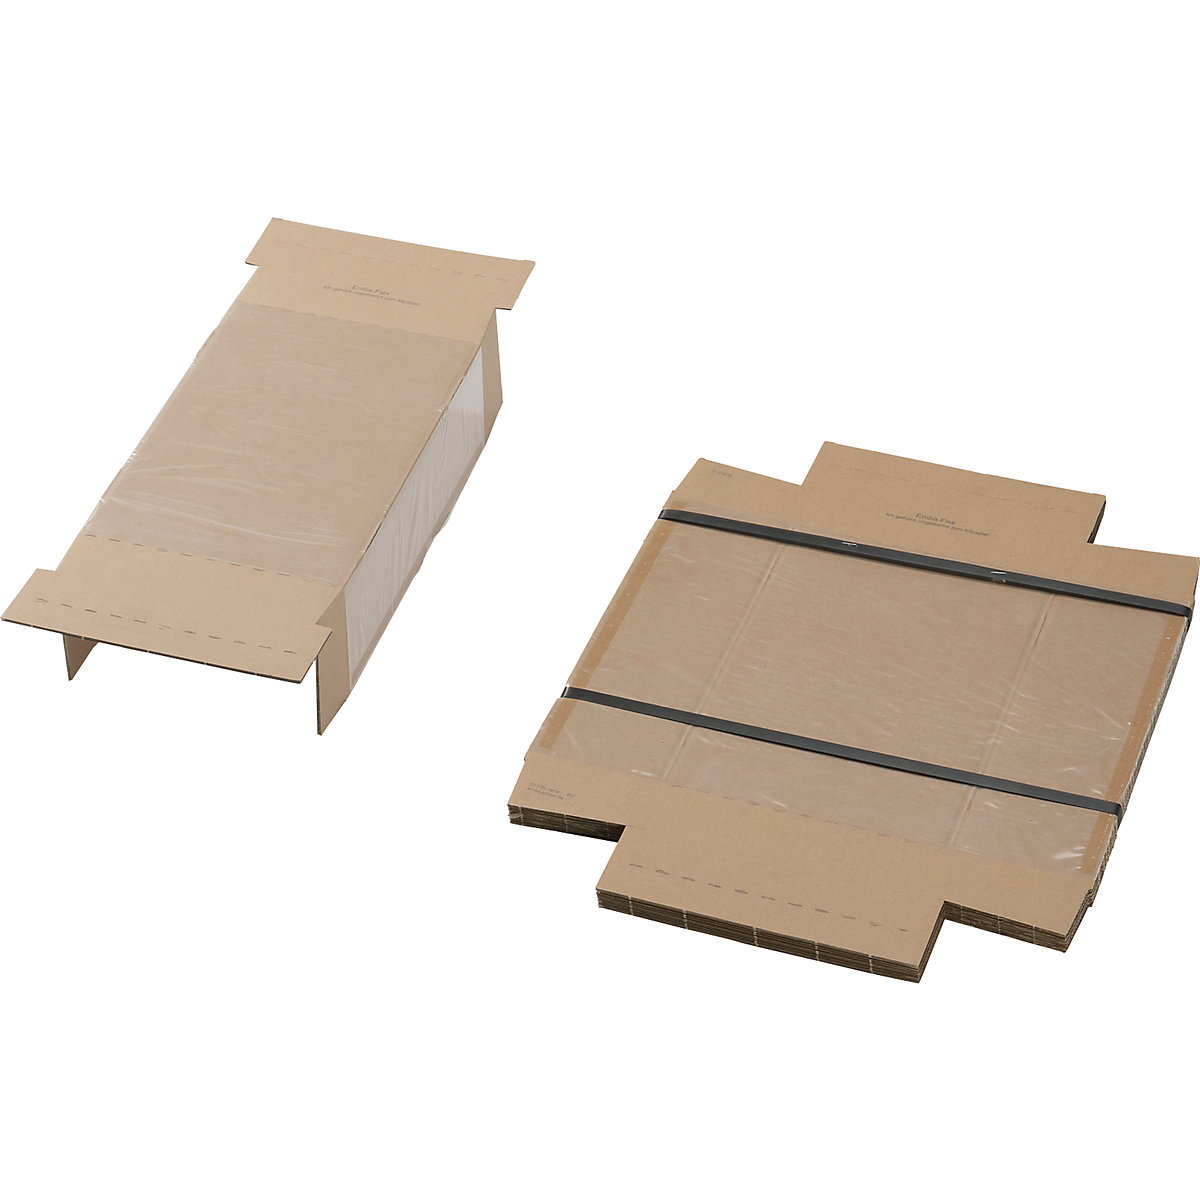 Embalaje de fijación, con pieza interior de fijación y caja protectora externa, UE 25 unid., para dimensiones de paquete de L x A x H 300 x 200 x 100 mm-1